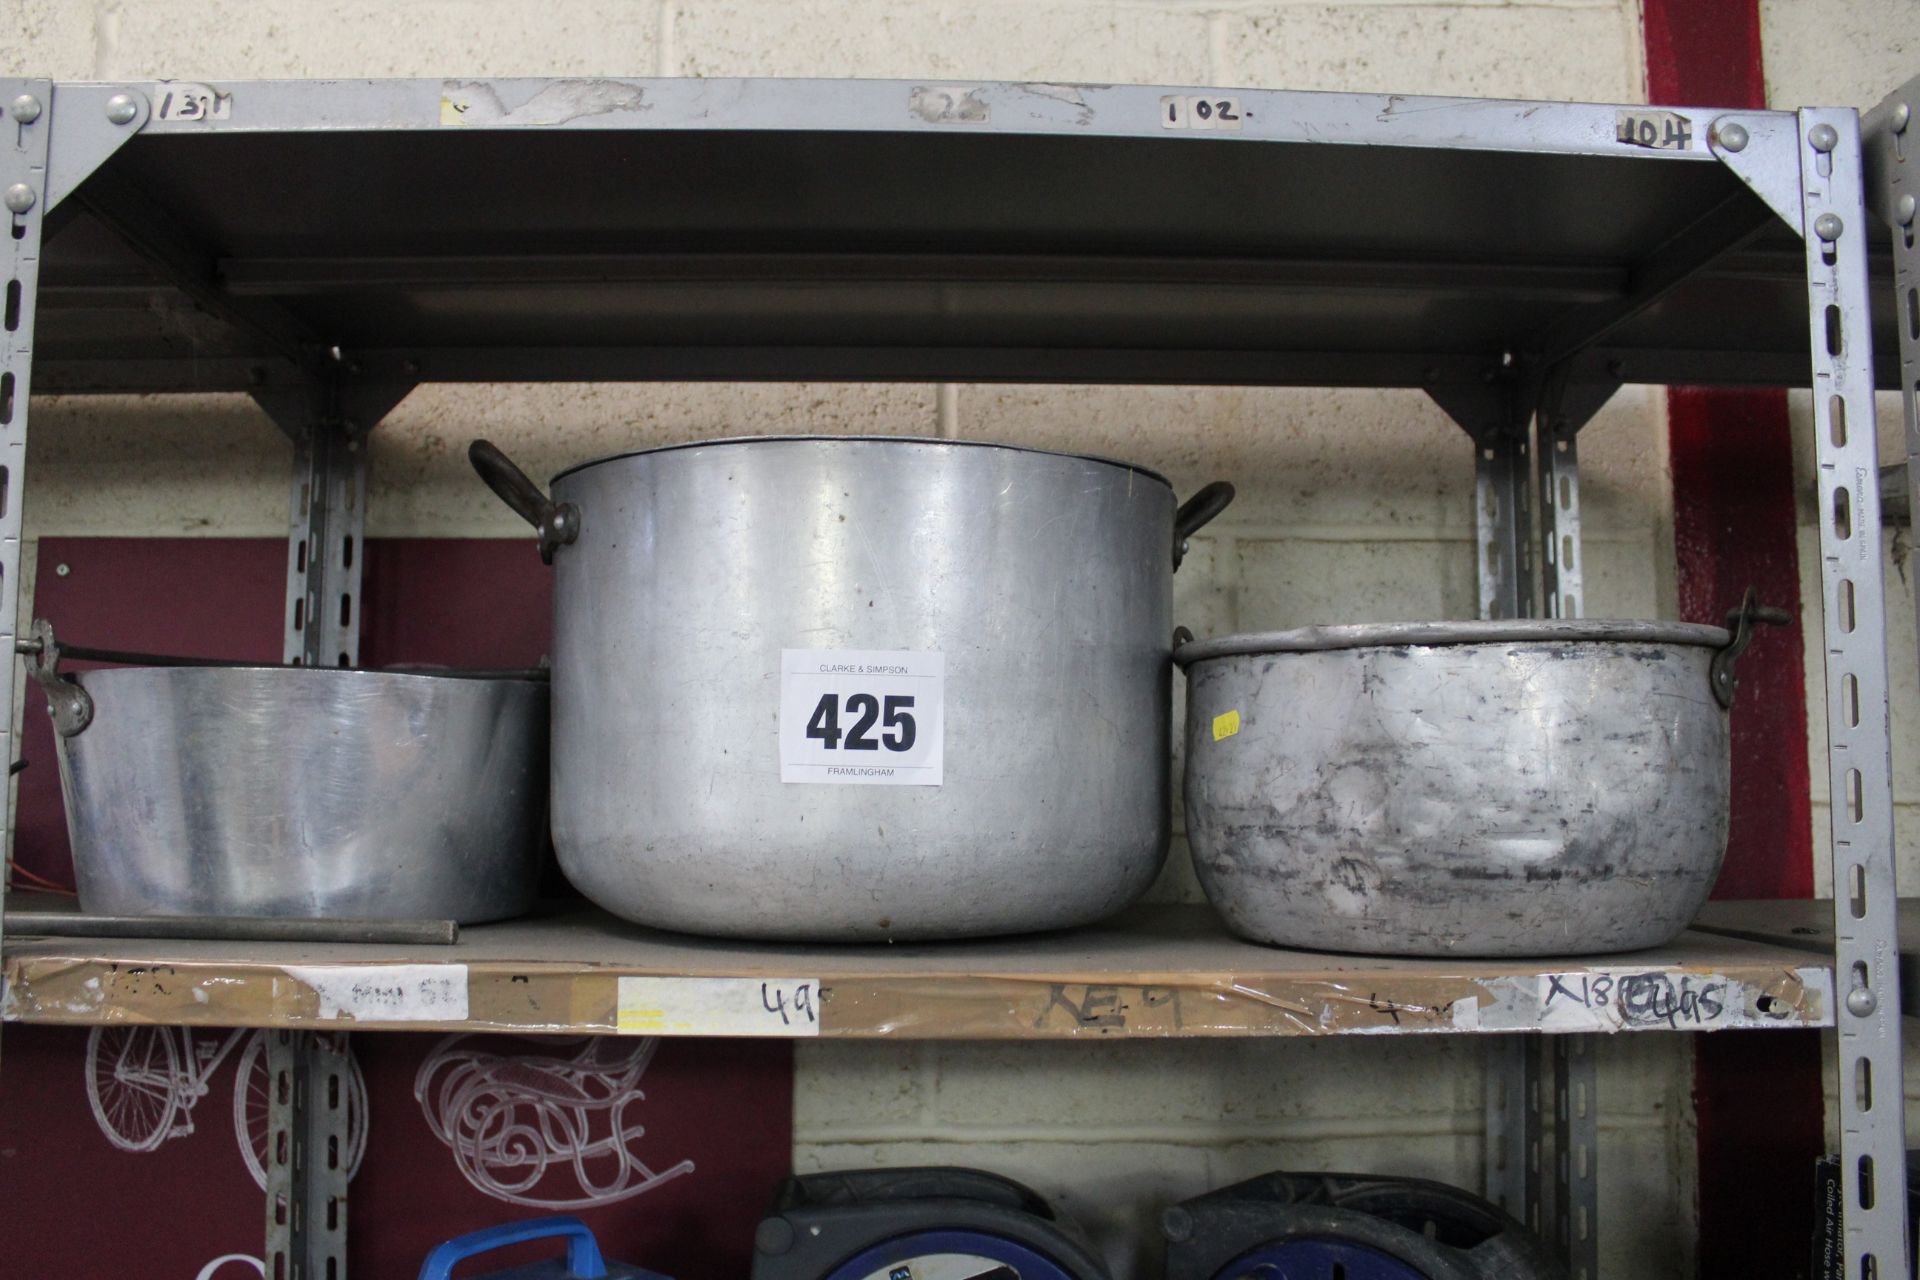 3x large pans.